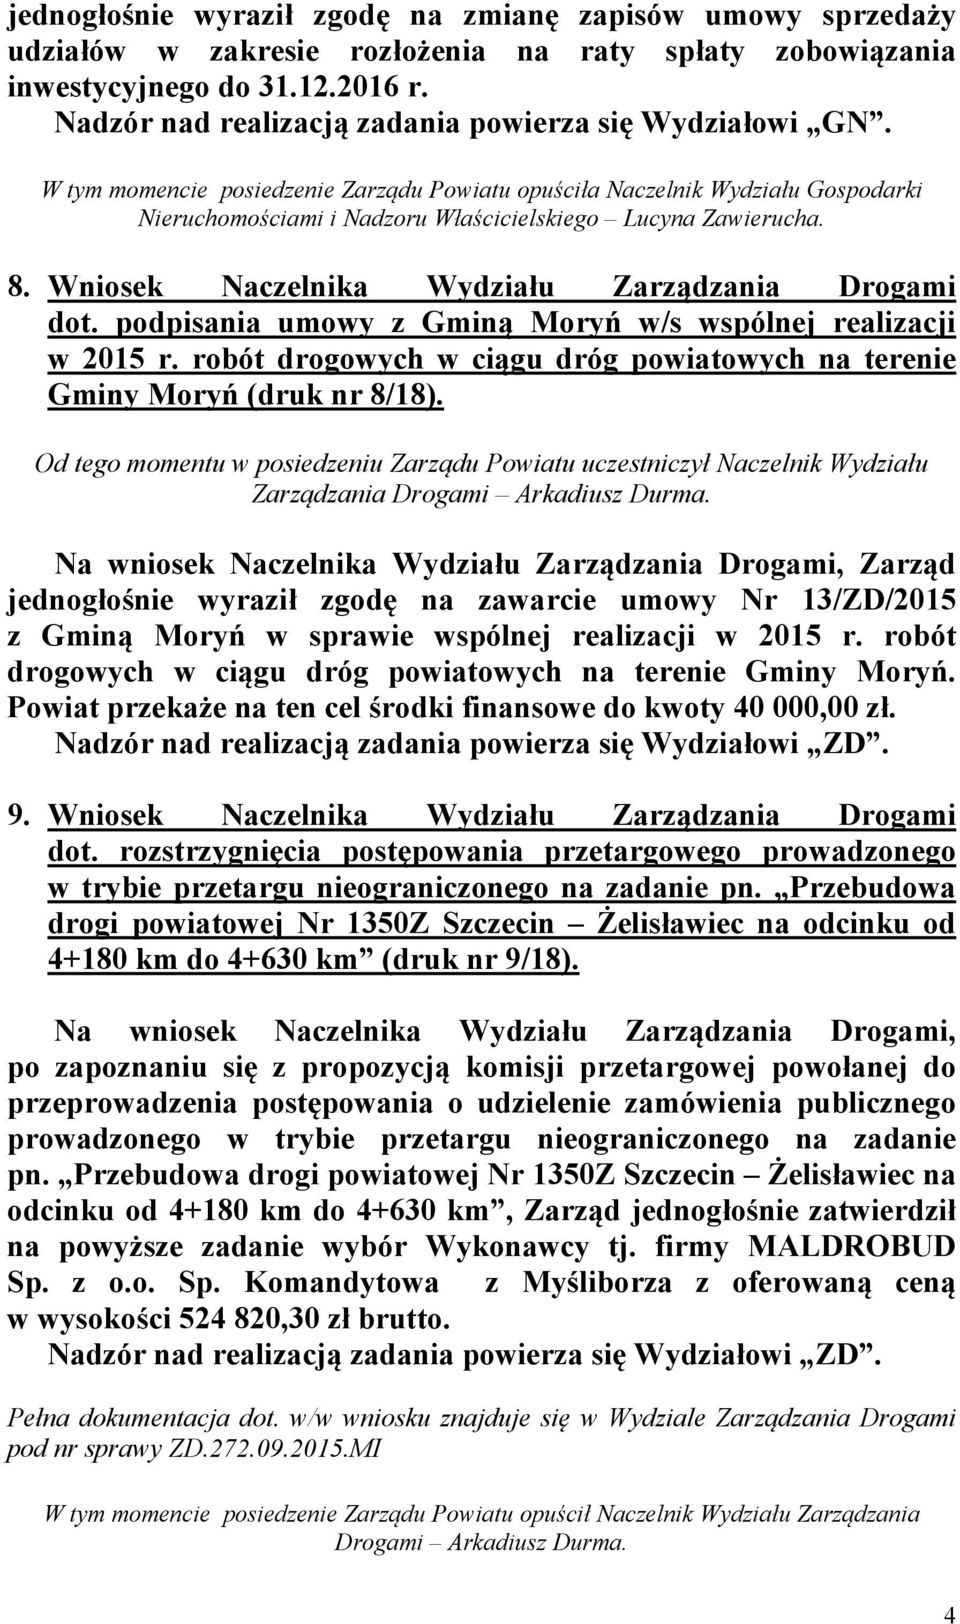 podpisania umowy z Gminą Moryń w/s wspólnej realizacji w 2015 r. robót drogowych w ciągu dróg powiatowych na terenie Gminy Moryń (druk nr 8/18).